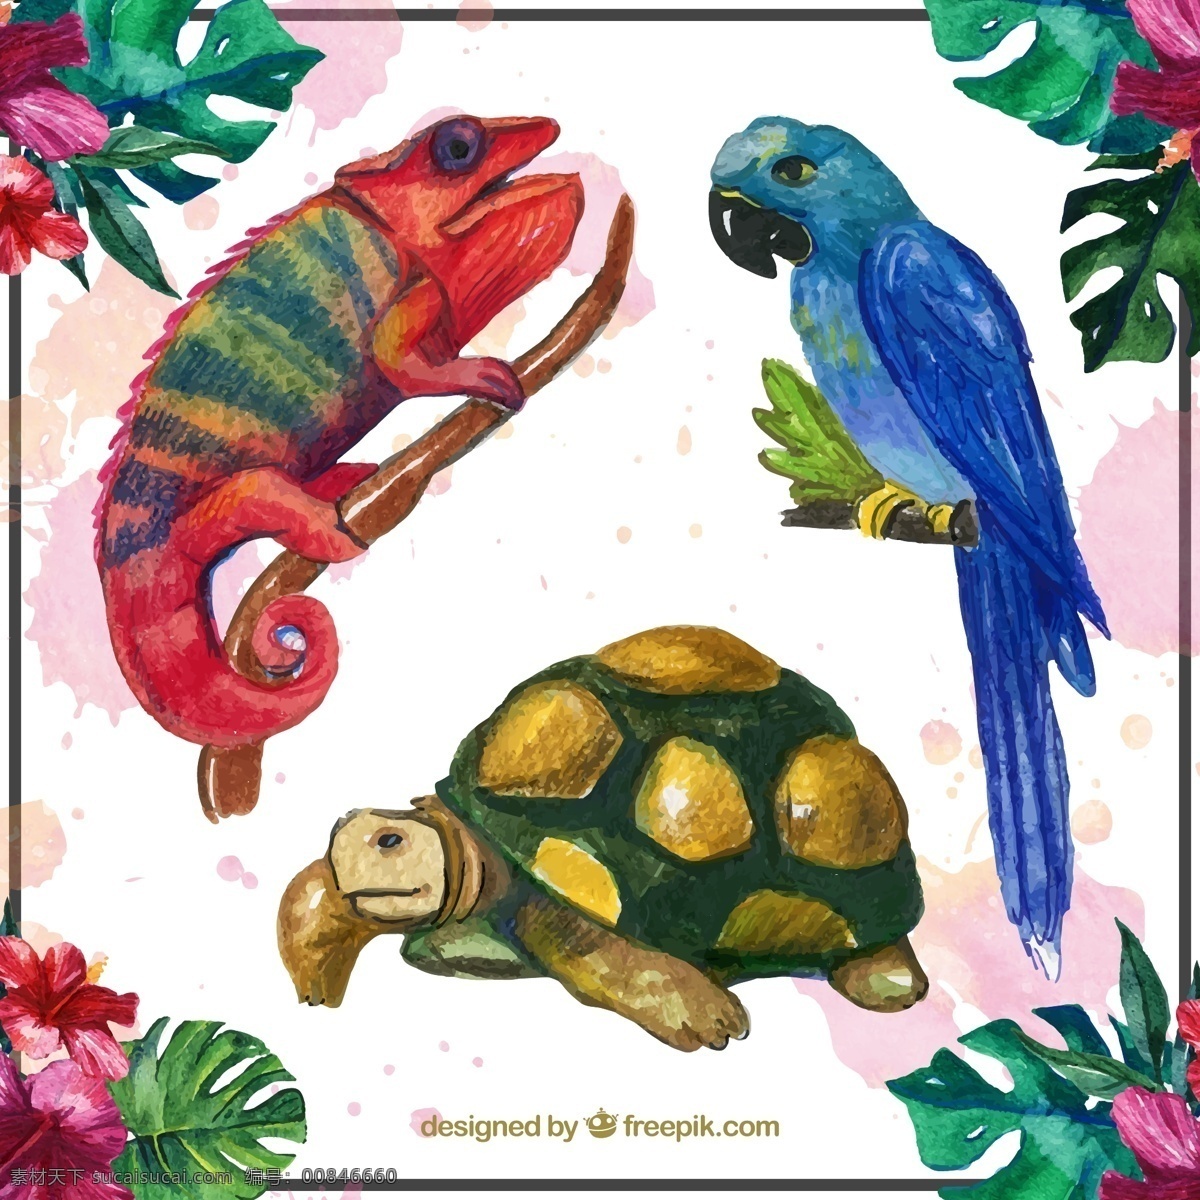 款 水彩 绘 热带 动物 矢量 变色龙 海龟 鹦鹉 龟背竹 树干 扶桑花 矢量图.